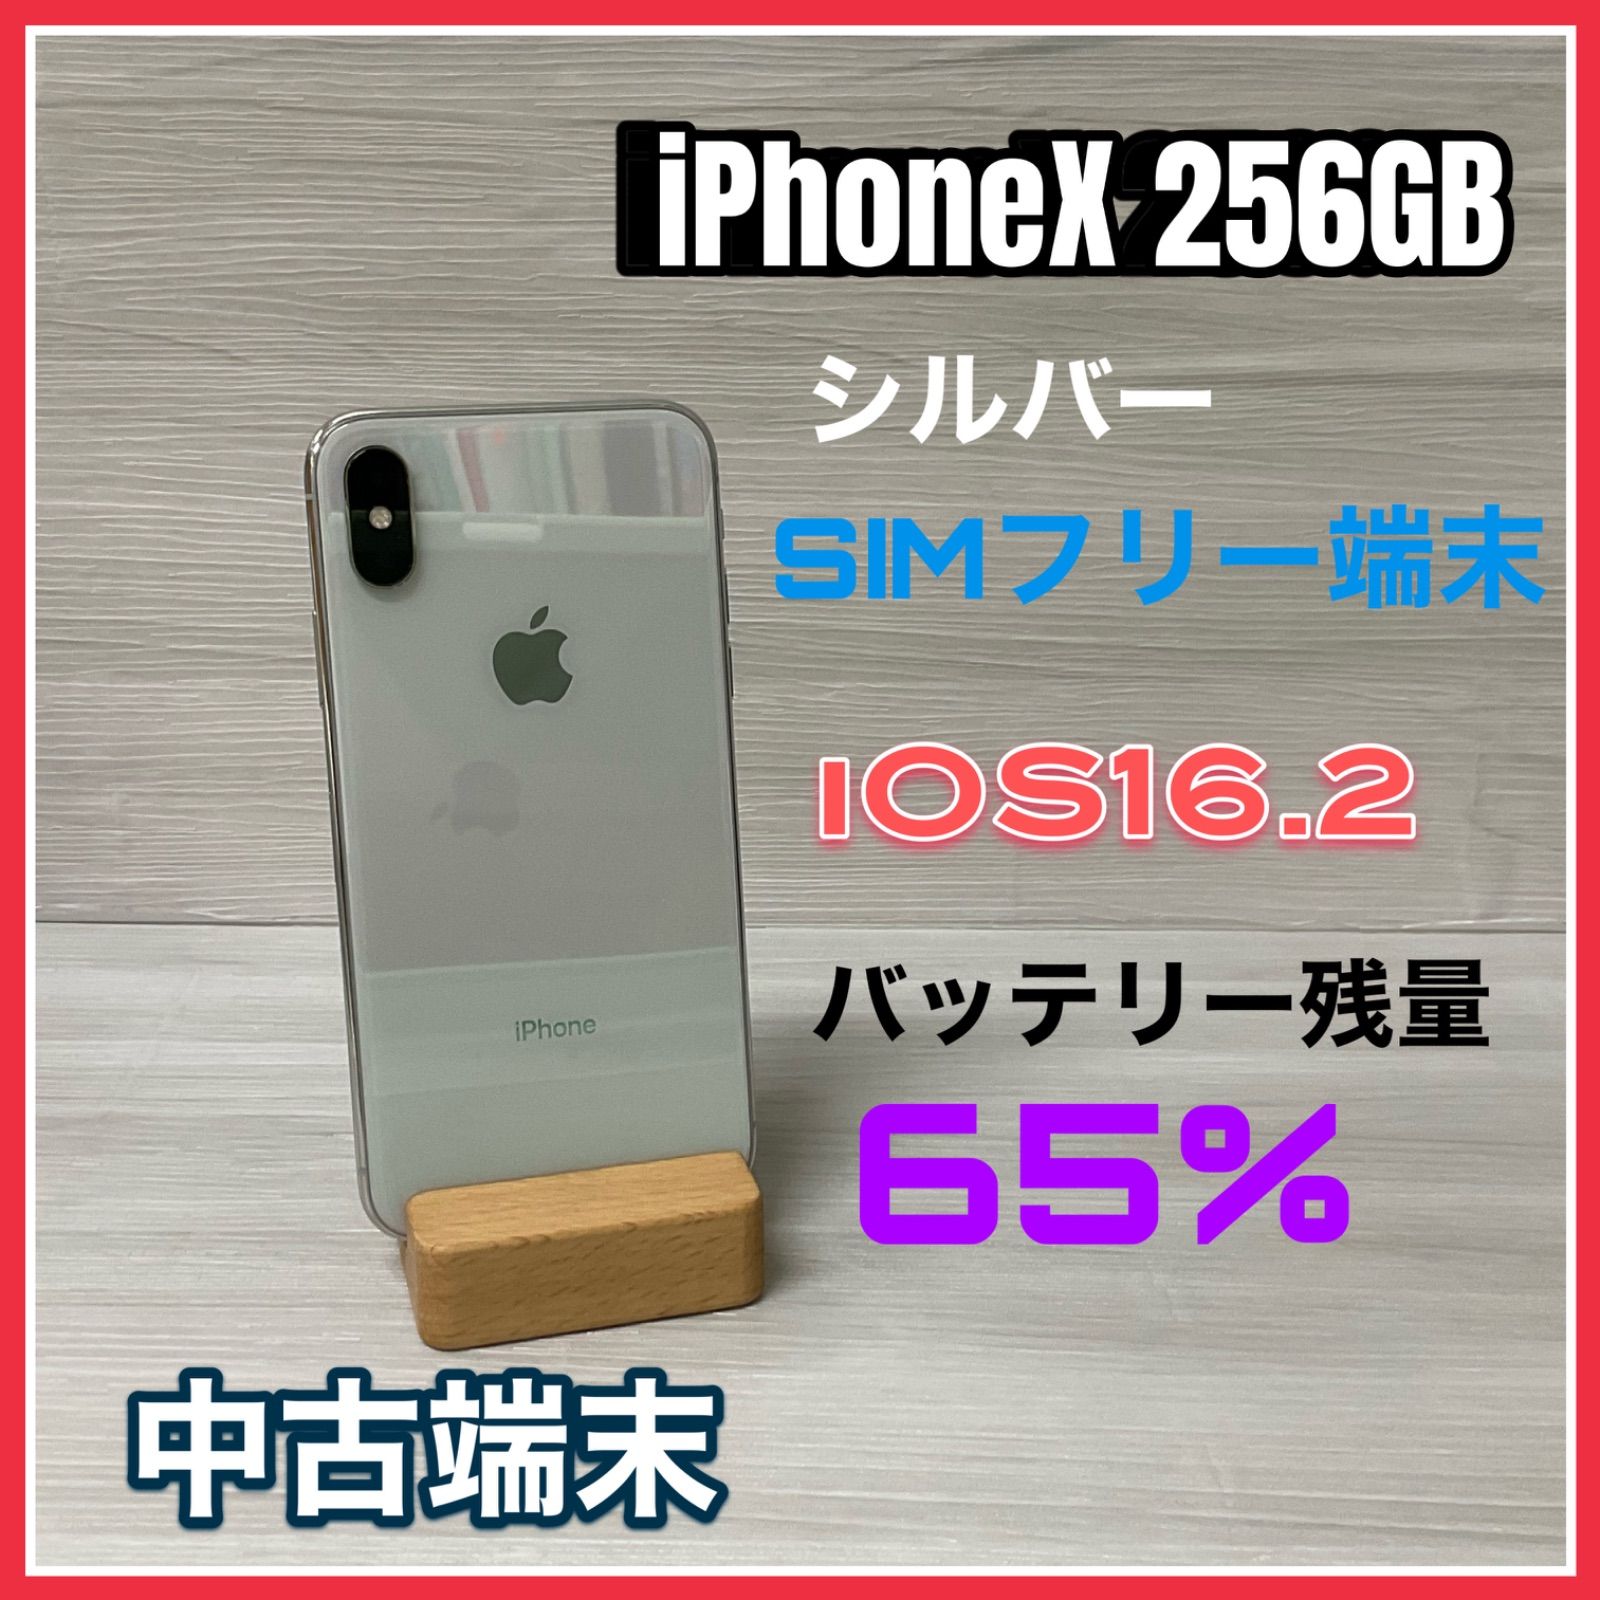 【送料無料】iPhone X 256GB グレイ (ブラック) 本